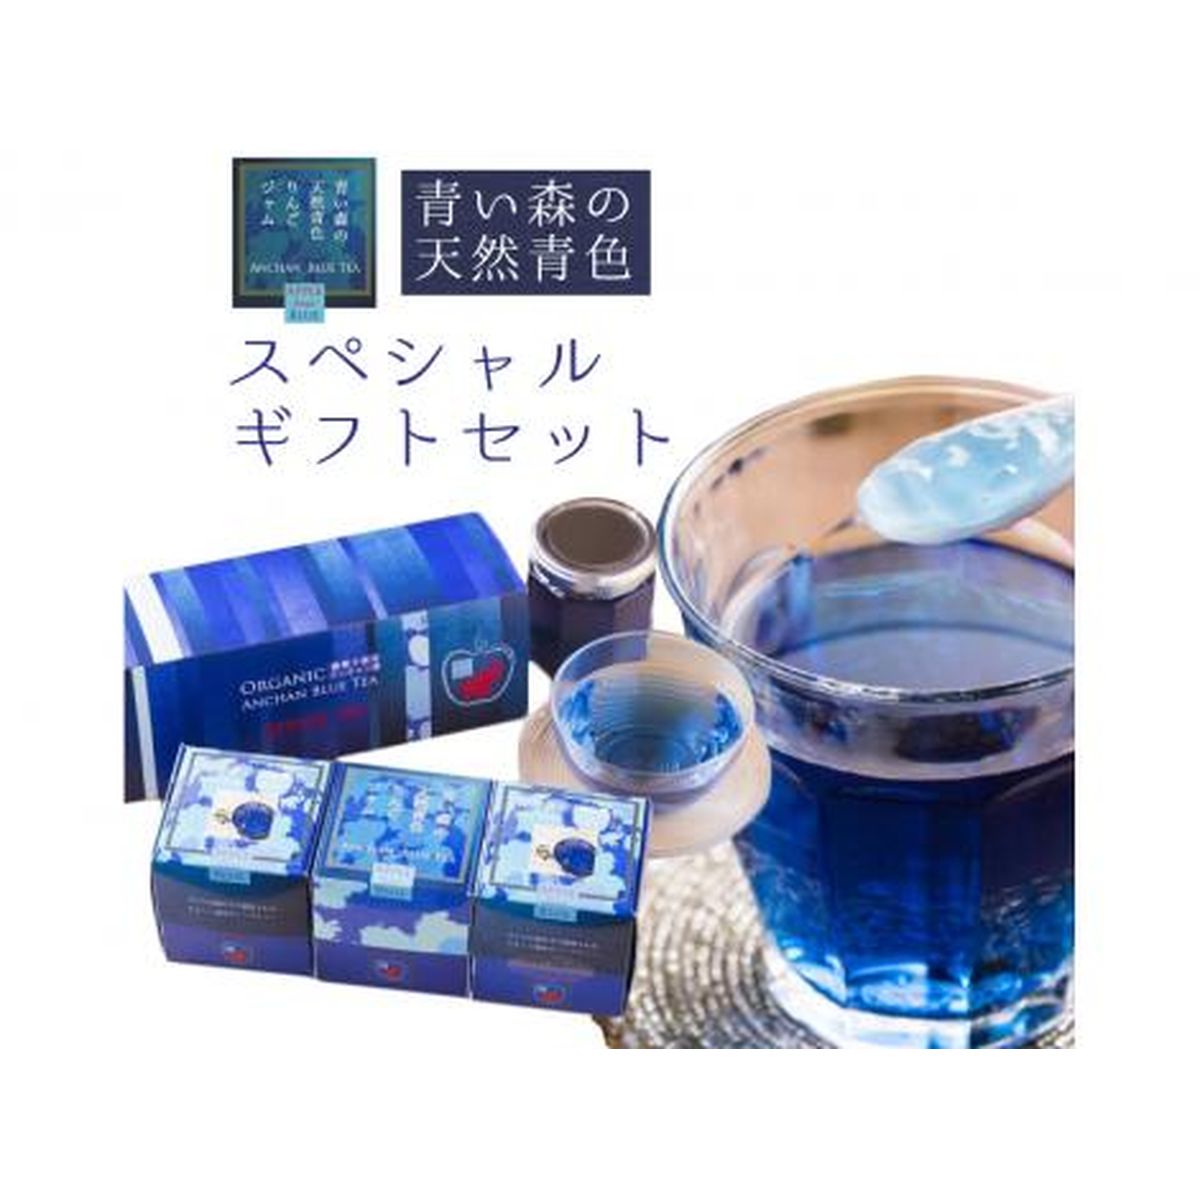 【送料無料】企業組合JT＆Accoiates 青い森の天然青色リンゴジャムとアンチャンハーブティー 特製化粧箱入りスペシャルギフトセット(ジャム大1個(170g)・ハーブティー(8g×2個))